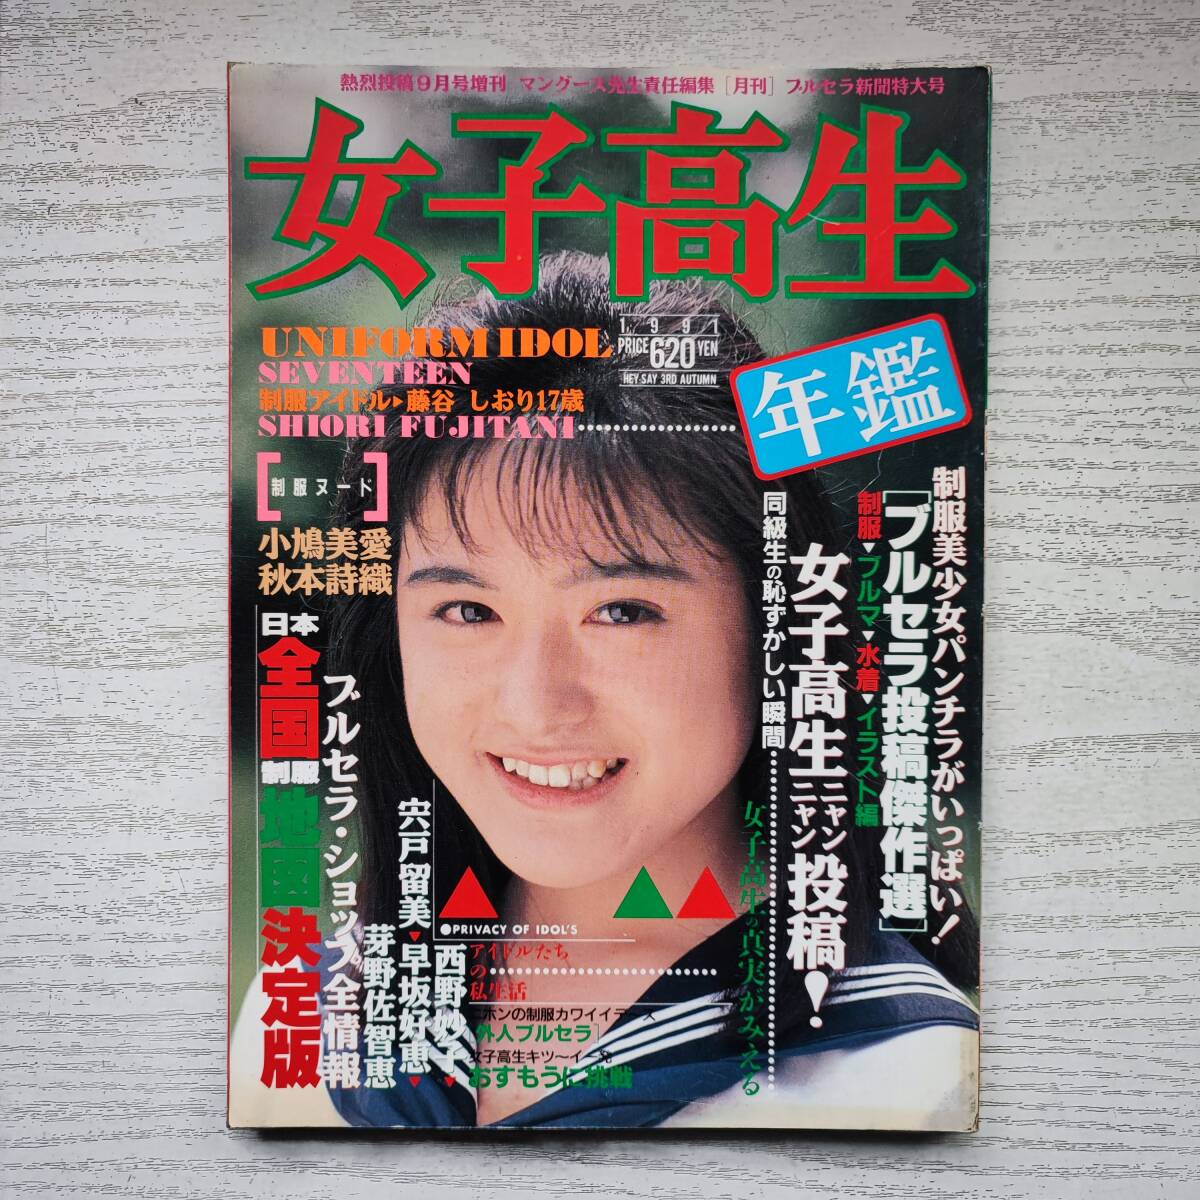 【雑誌】女子高生年鑑 1991年版 秋号 熱烈投稿9月号増刊 少年出版社 B_画像1